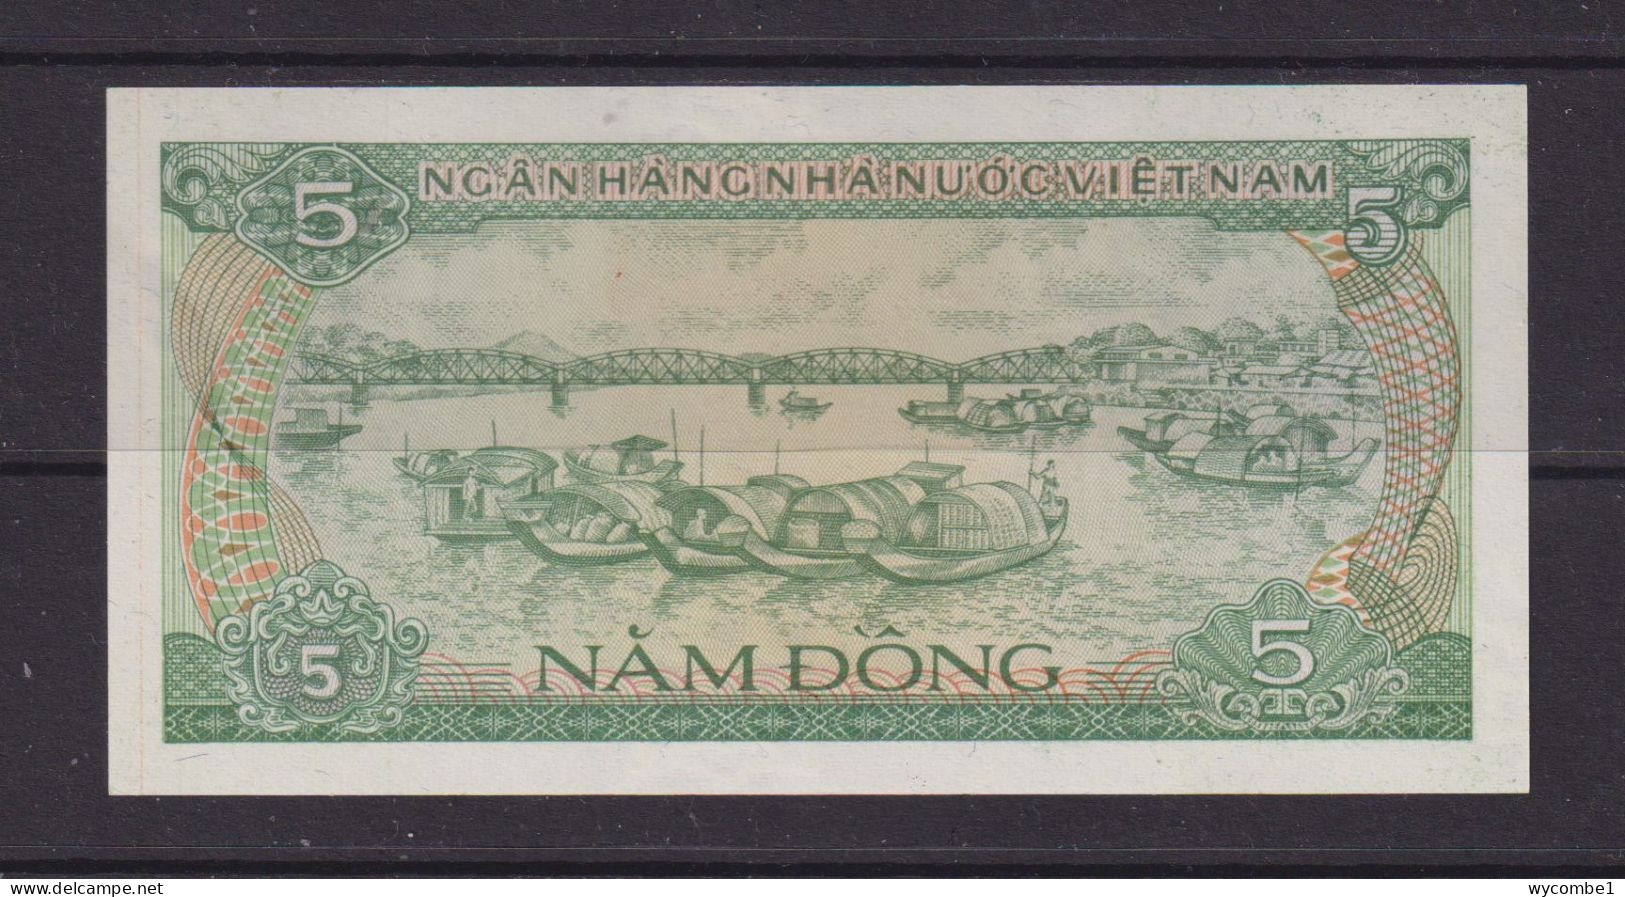 VIETNAM - 1985 5 Dong UNC Banknote - Vietnam